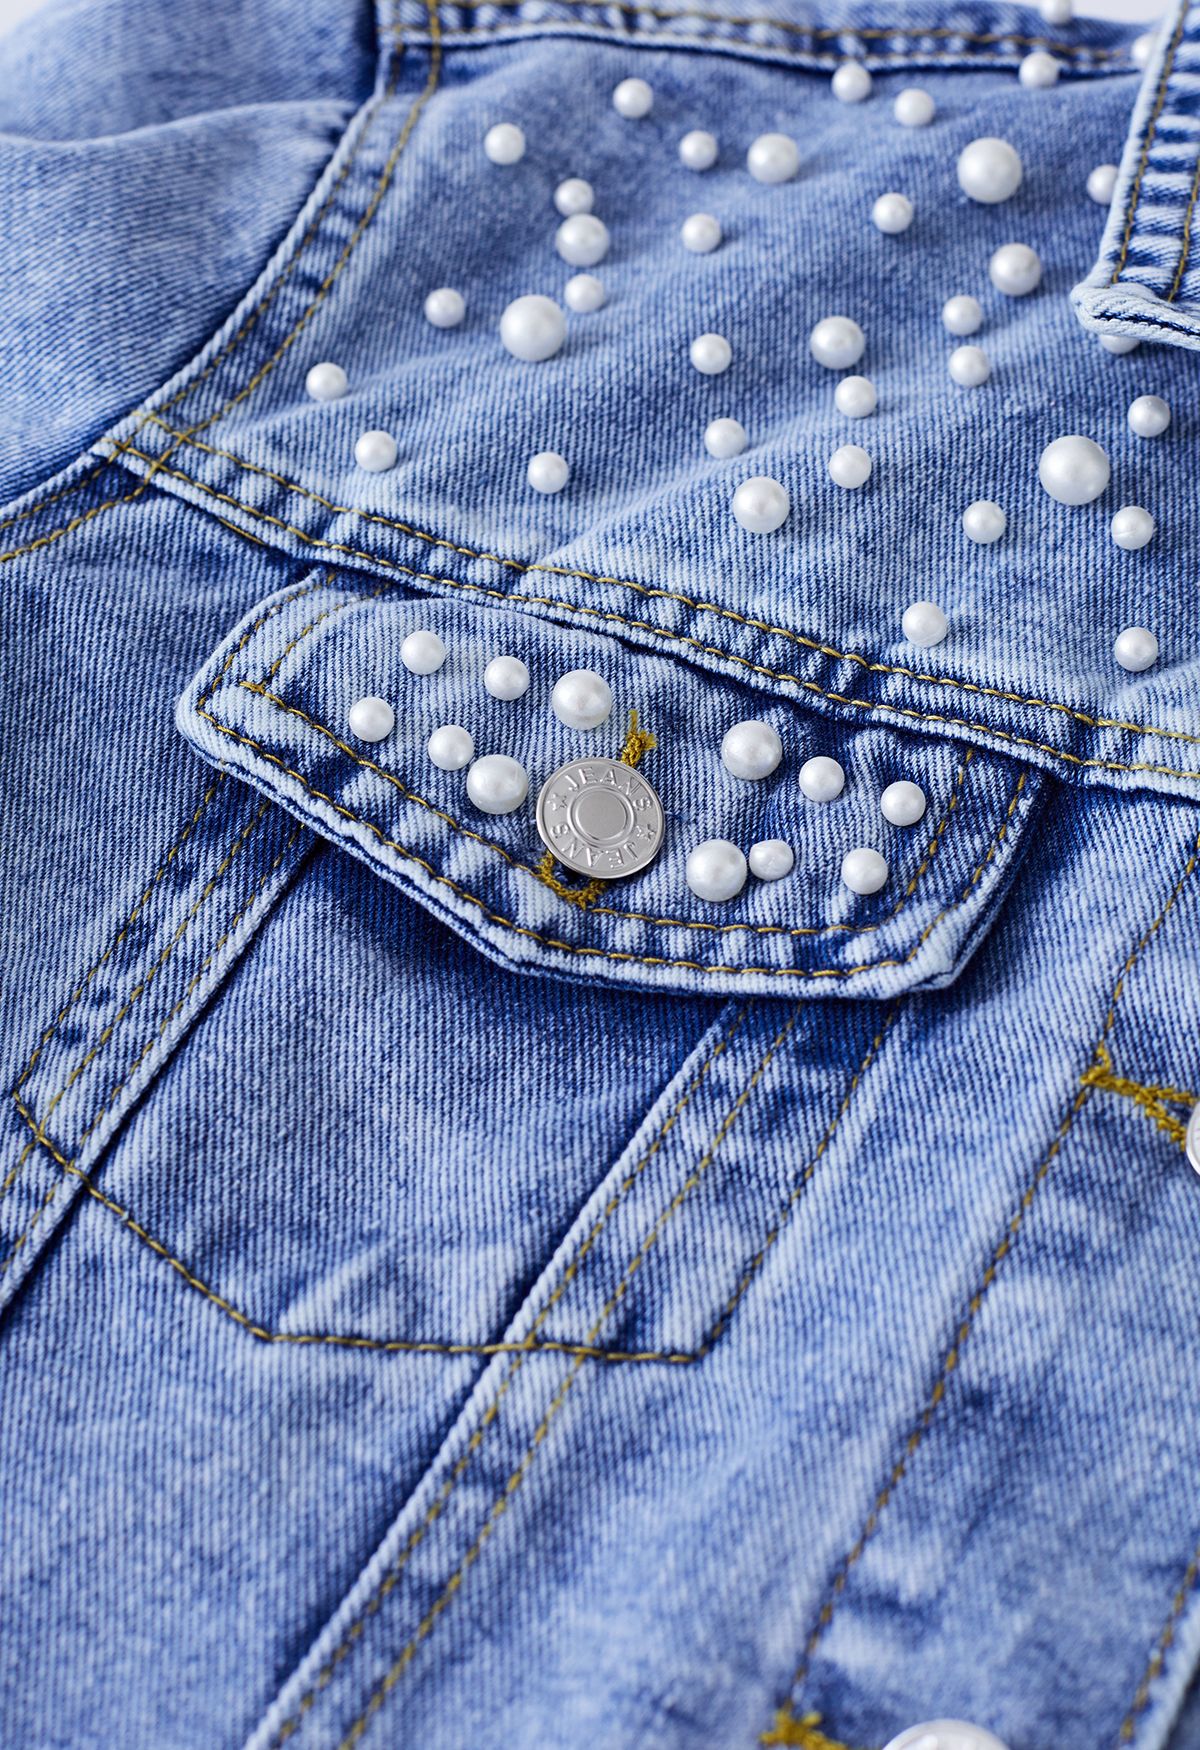 Veste en jean avec poche à rabat ornée de perles en bleu